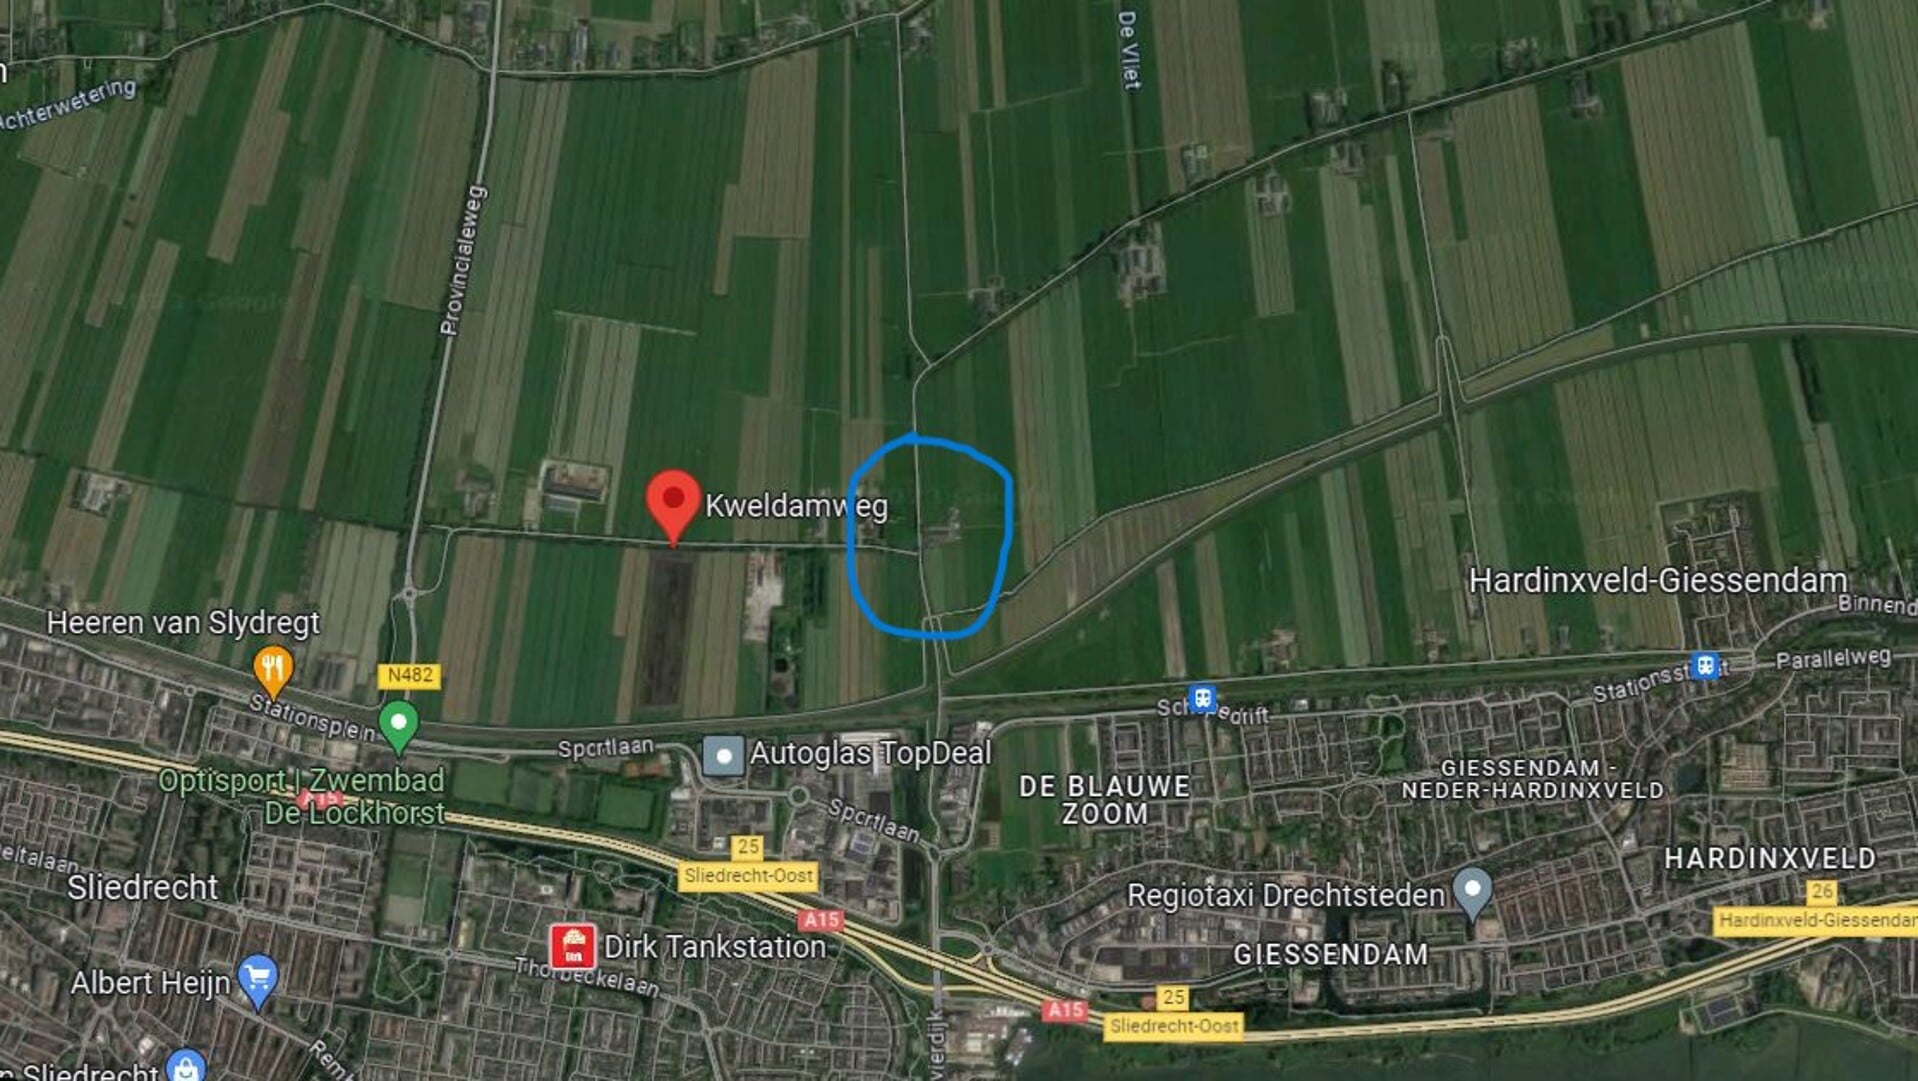 De beoogde locatie ligt net zo dicht bij Sliedrecht als bij Hardinxveld-Giessendam